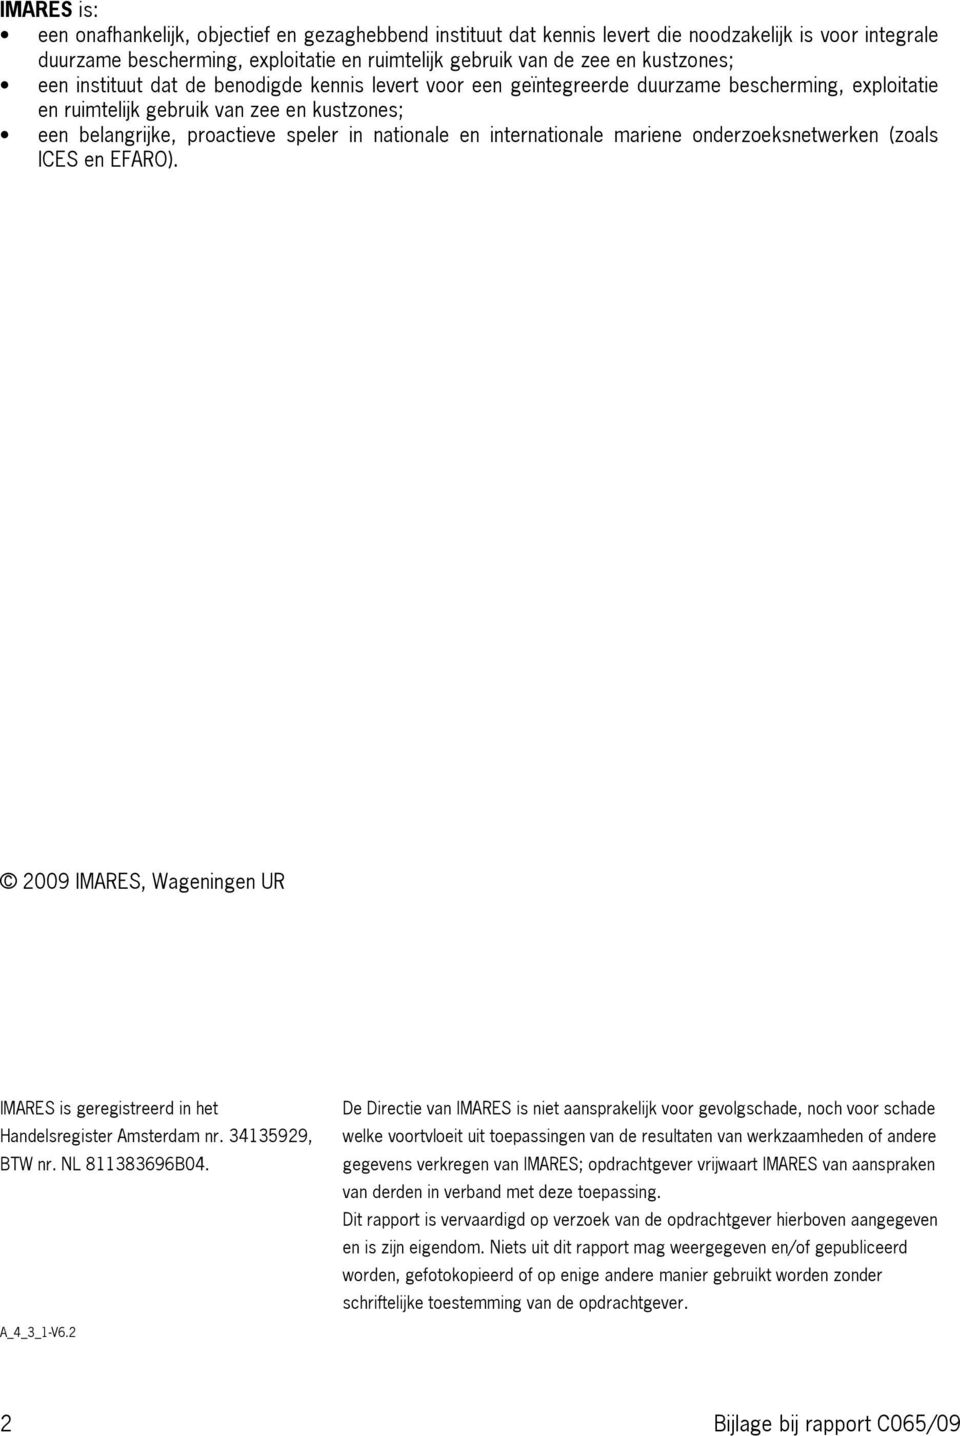 internationale mariene onderzoeksnetwerken (zoals ICES en EFARO). 2009 IMARES, Wageningen UR IMARES is geregistreerd in het Handelsregister Amsterdam nr. 34135929, BTW nr. NL 811383696B04. A_4_3_1-V6.